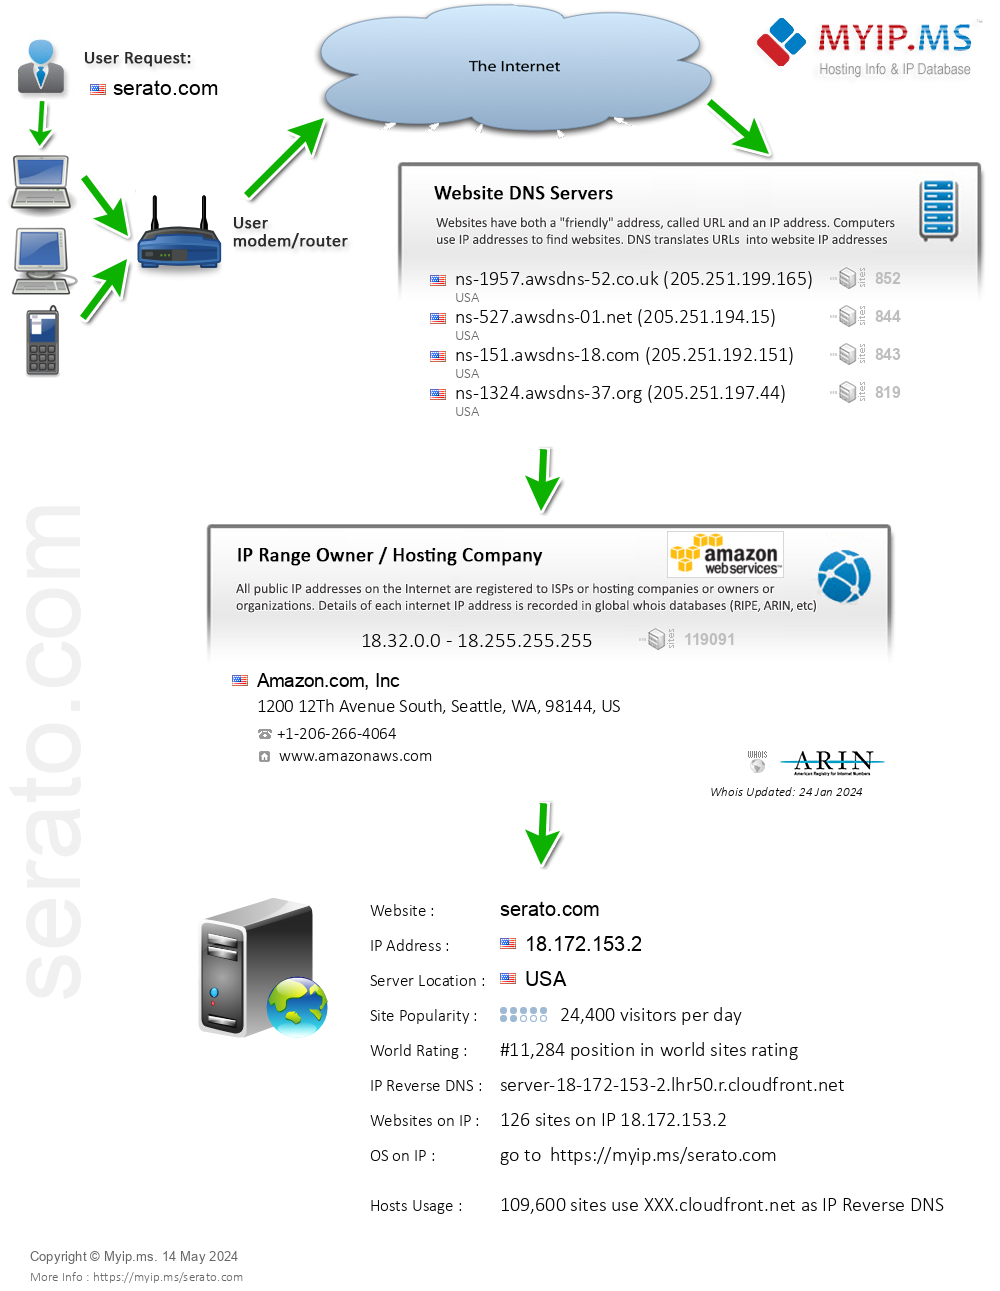 Serato.com - Website Hosting Visual IP Diagram